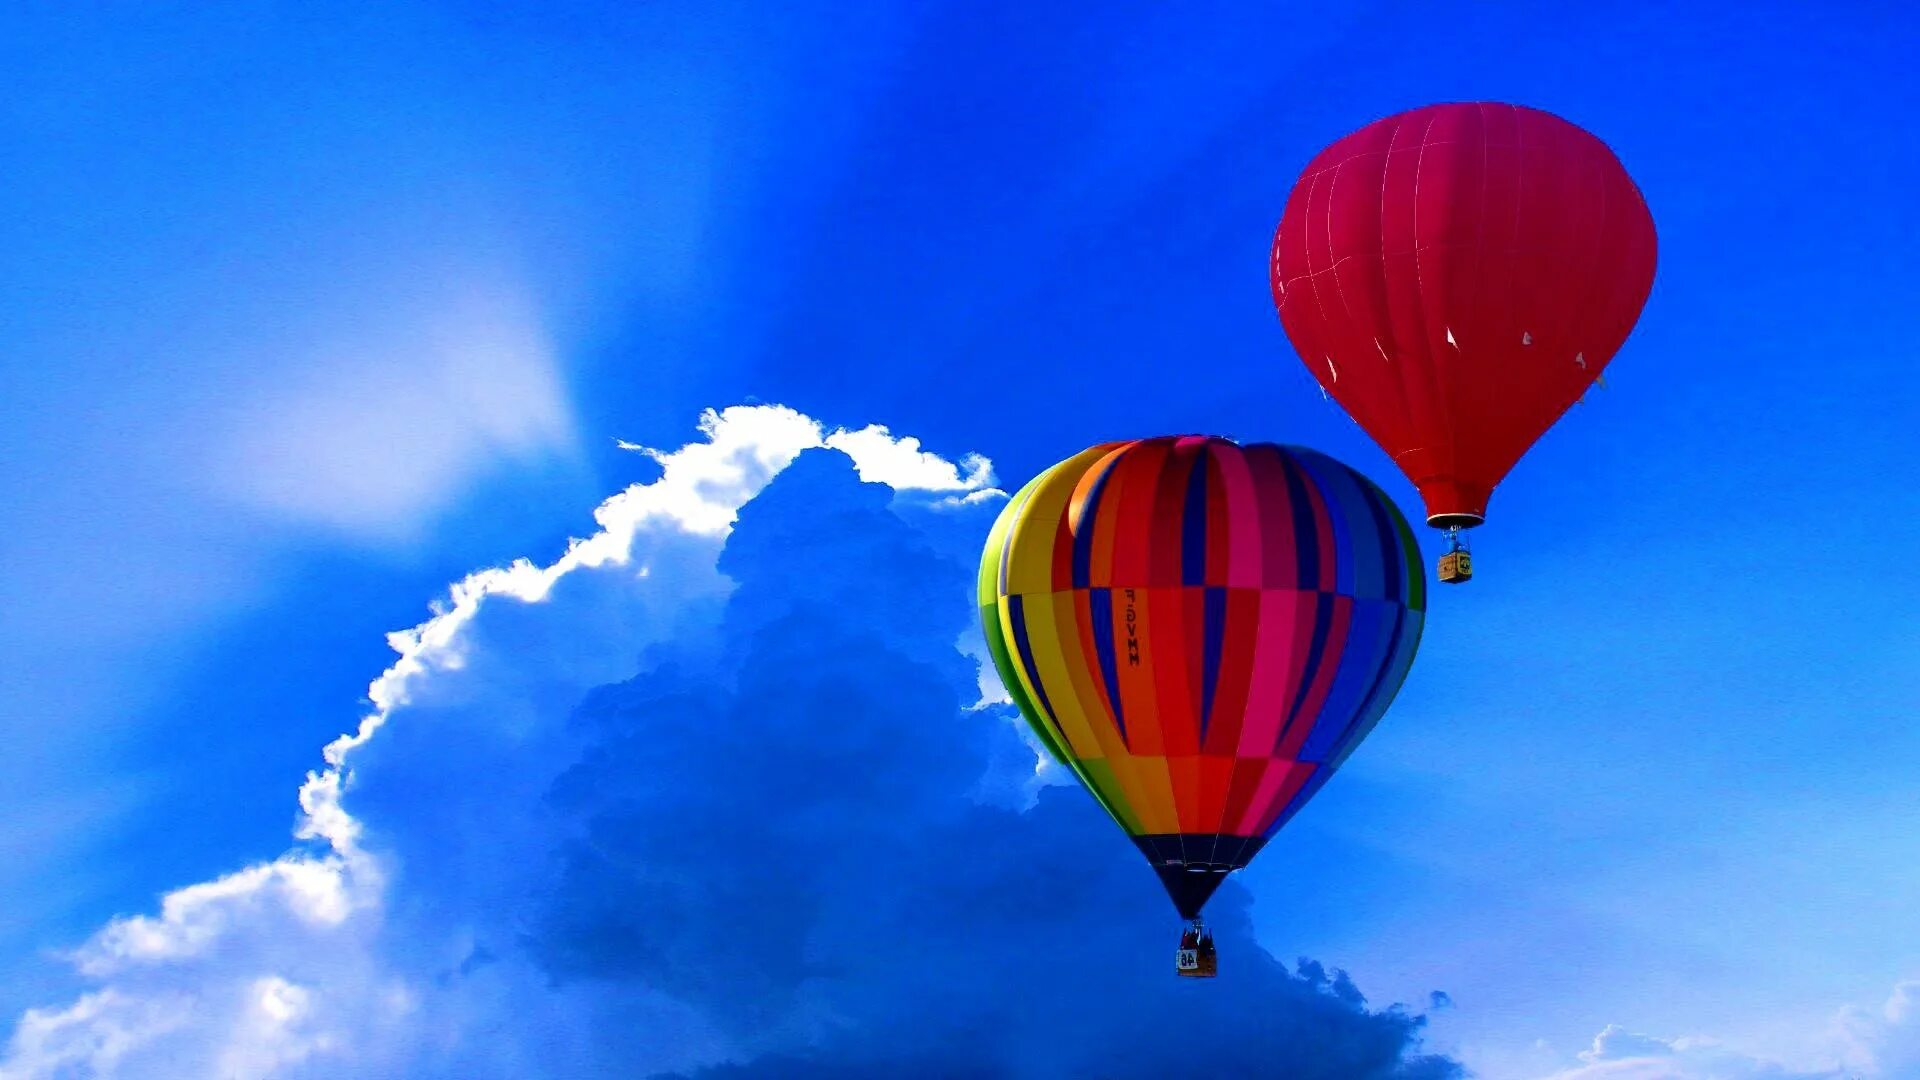 Телефон на воздушном шаре. Воздушный шар. Воздушный шар в небе. Заставка воздушные шары. Воздушный шар в голубом небе.